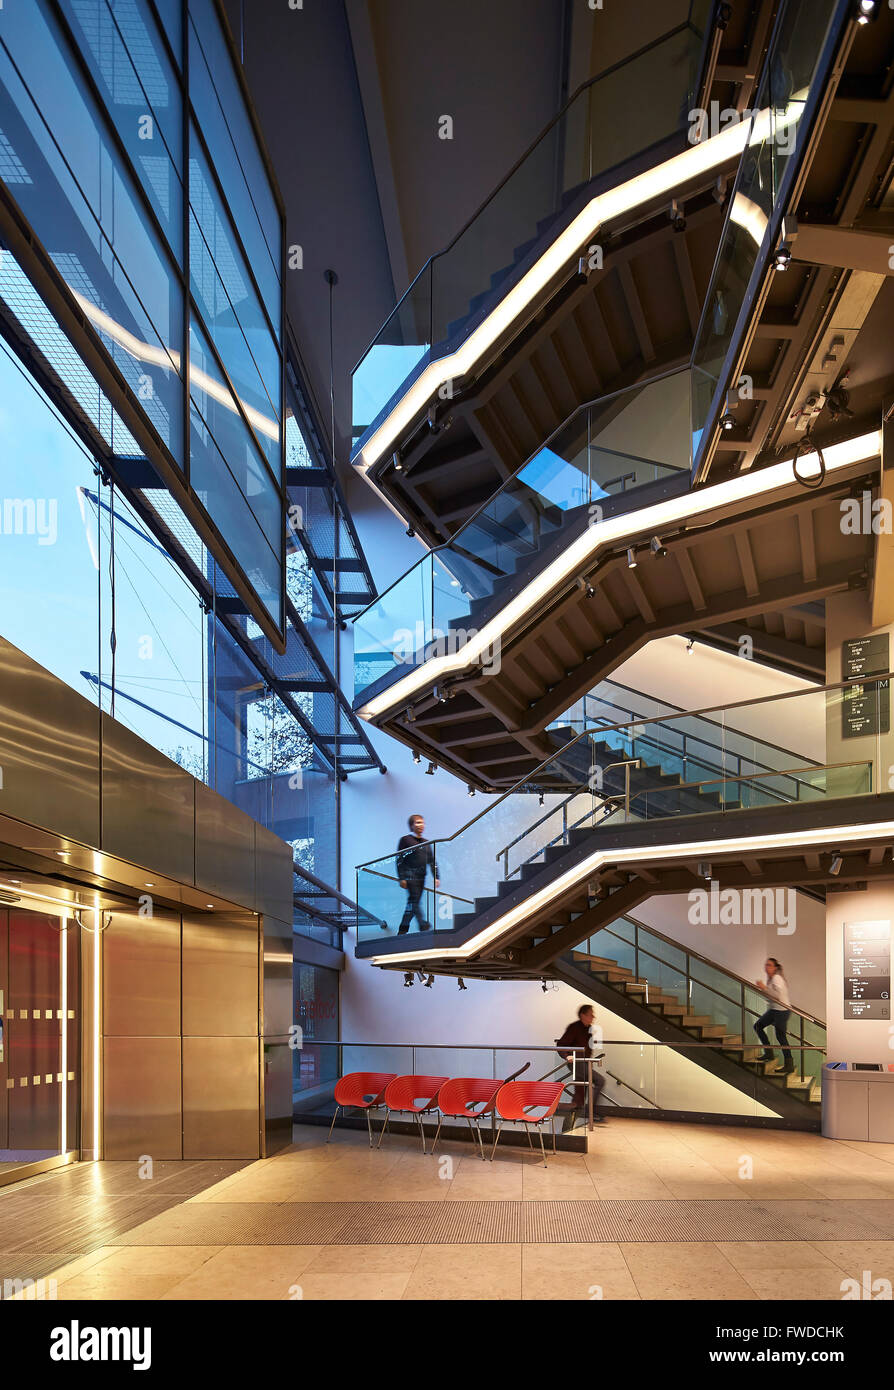 Escalier et mur fenêtre du foyer. Saddler's Wells, Londres, Royaume-Uni. Architecte : De Matos Ryan, 2014. Banque D'Images